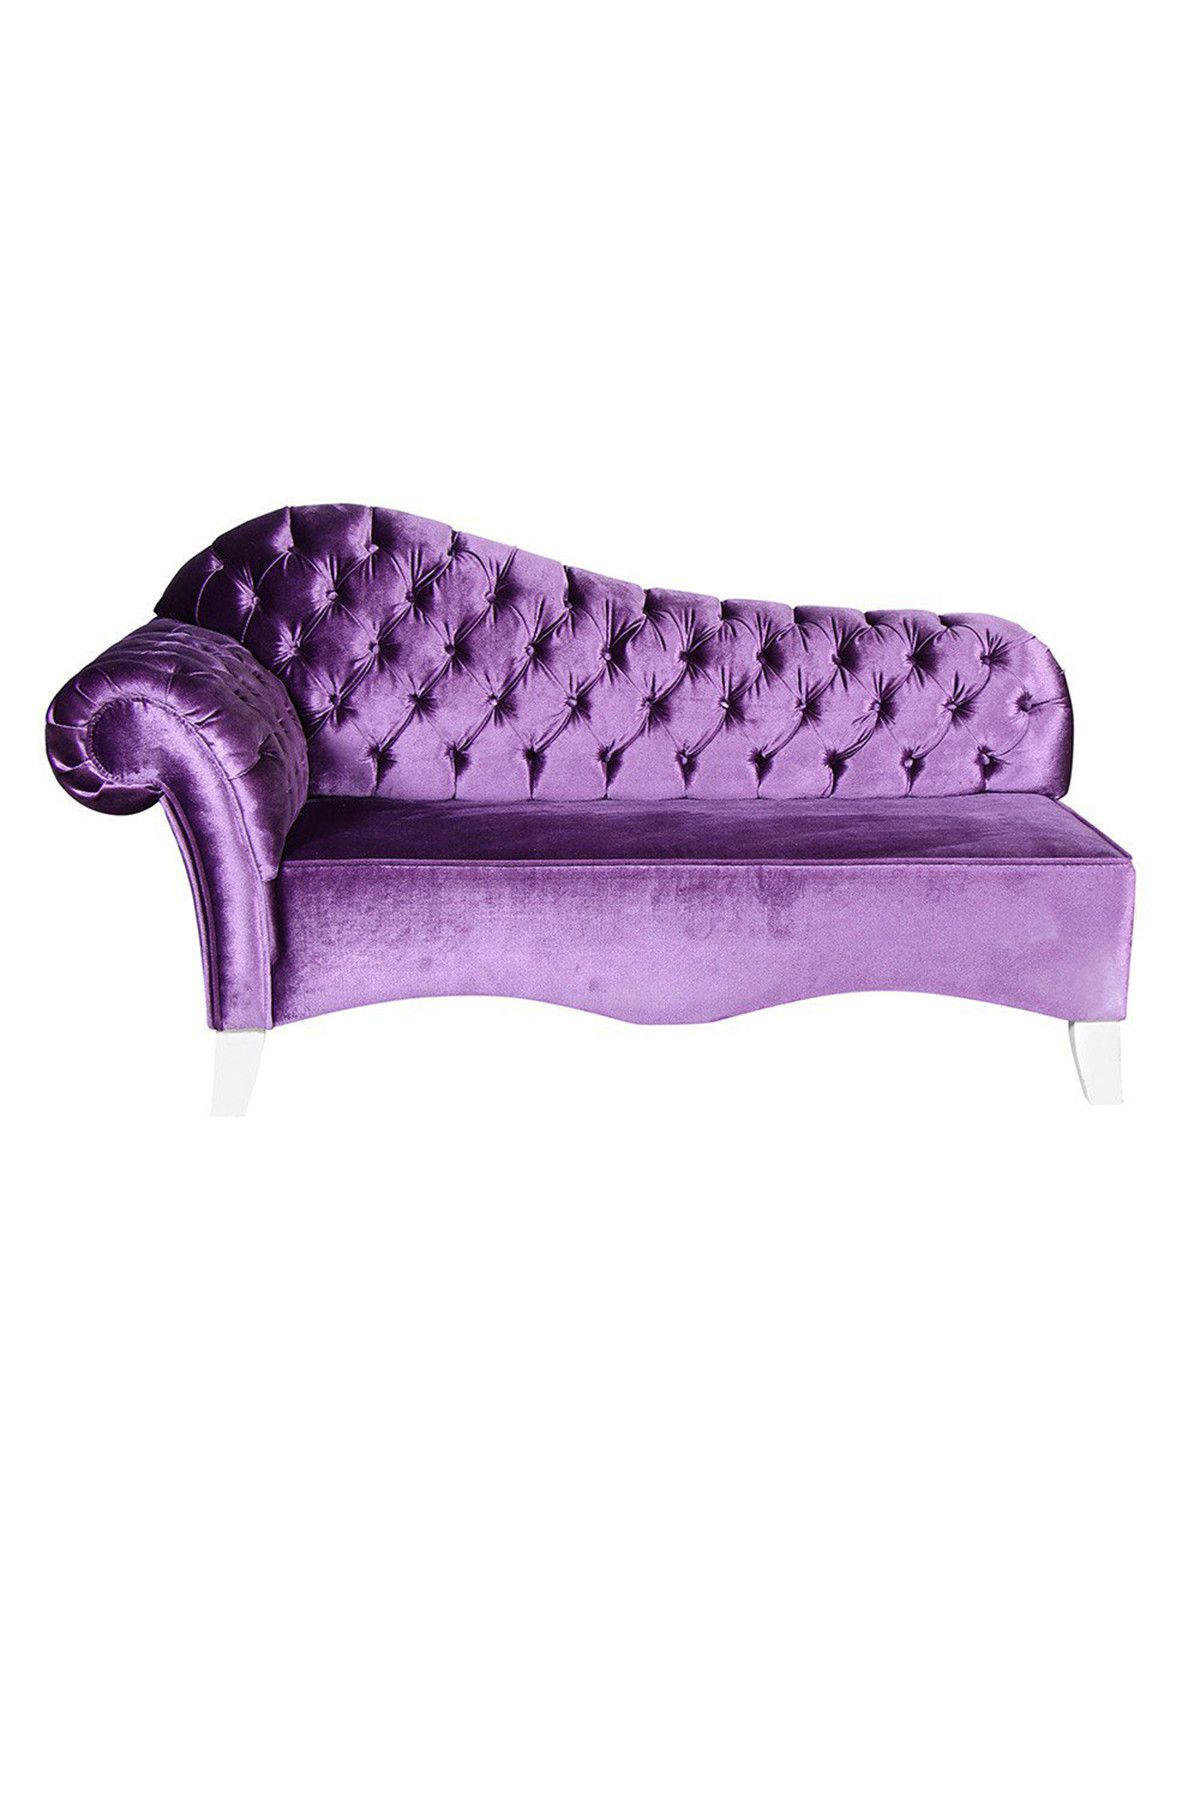 3A Mobilya New Purple Josephine 180X90X75 cm